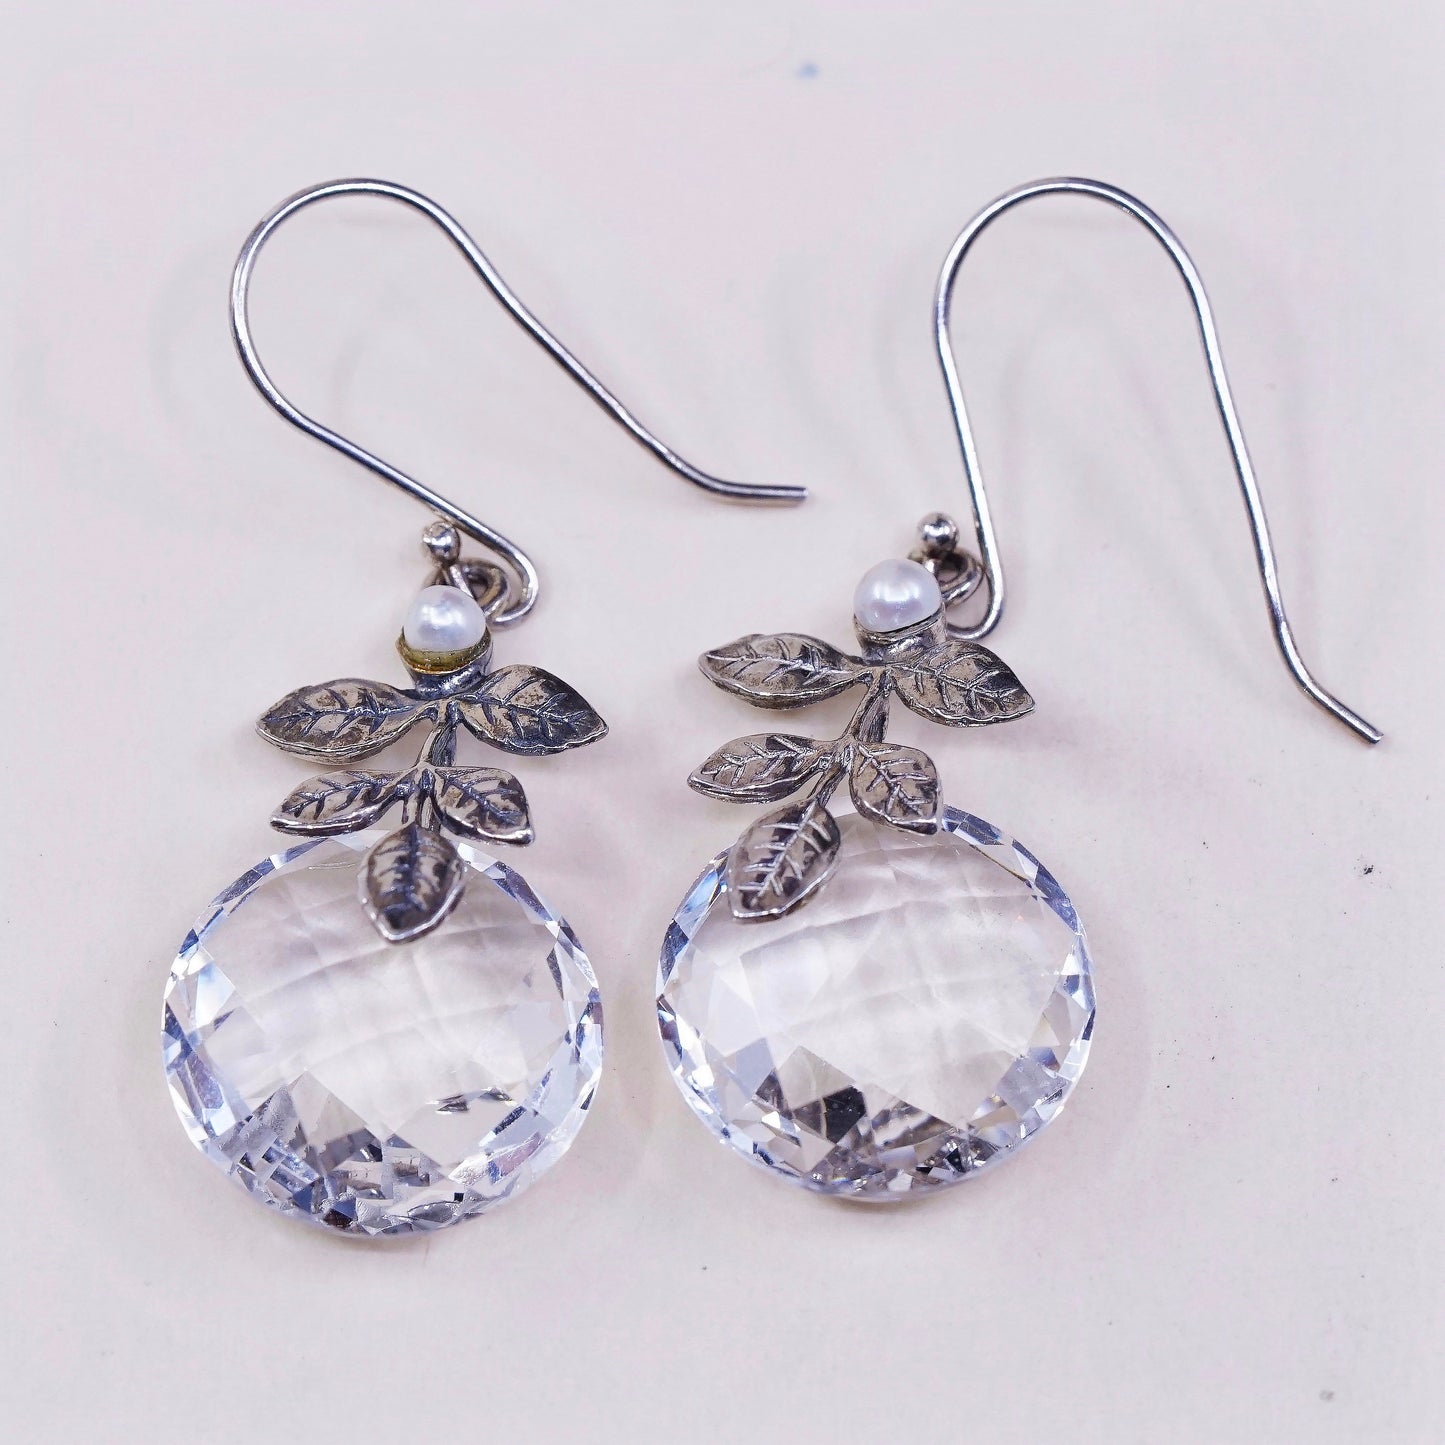 vtg Israel Sterling silver handmade earrings, 925 leaves w/ pearl n cz dangles